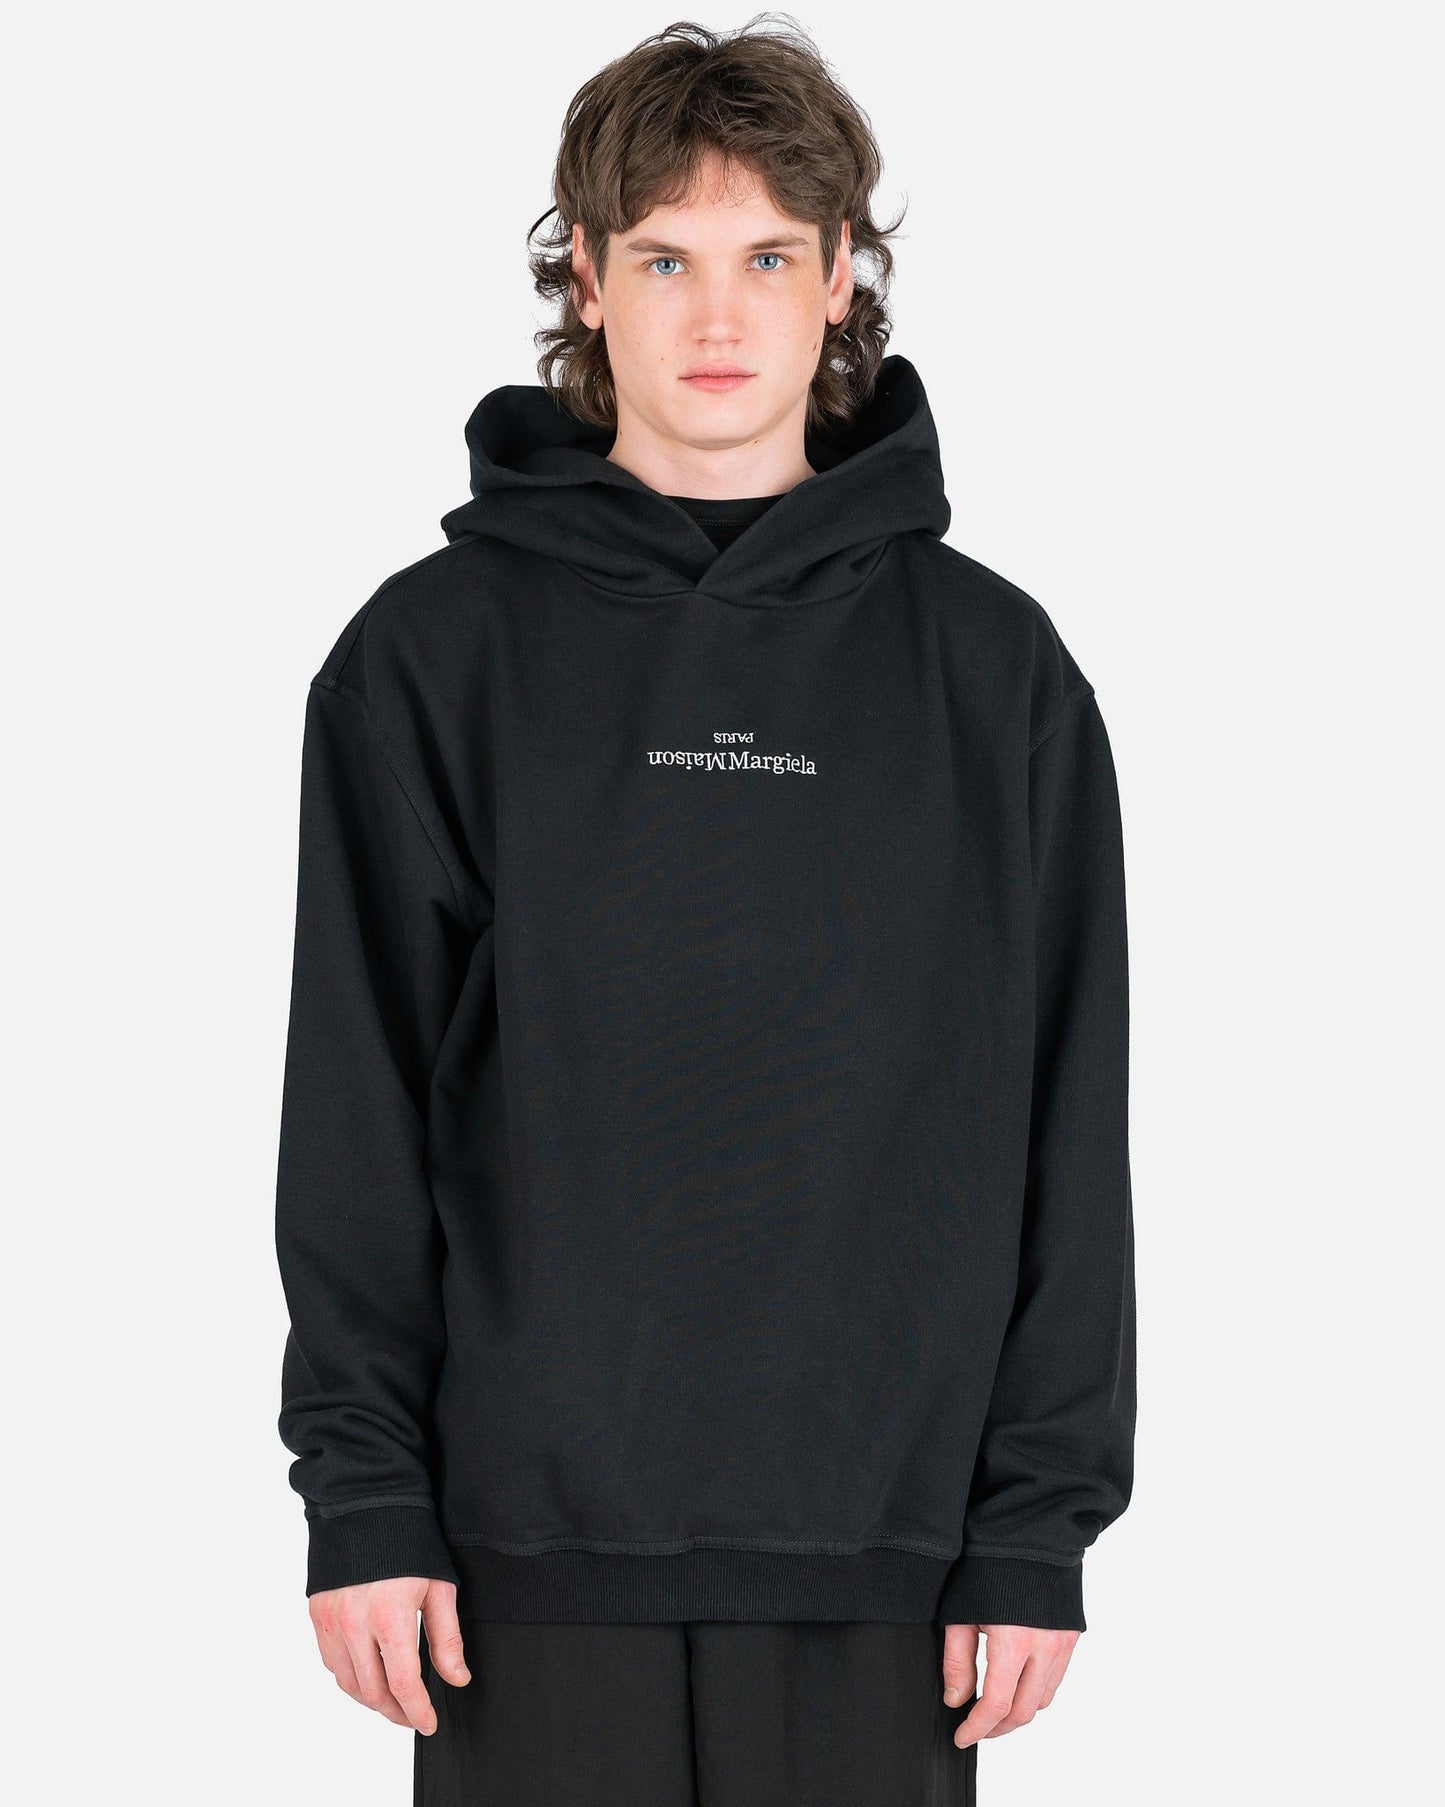 Upside Down Logo Hooded Sweatshirt in Black - Maison Margiela